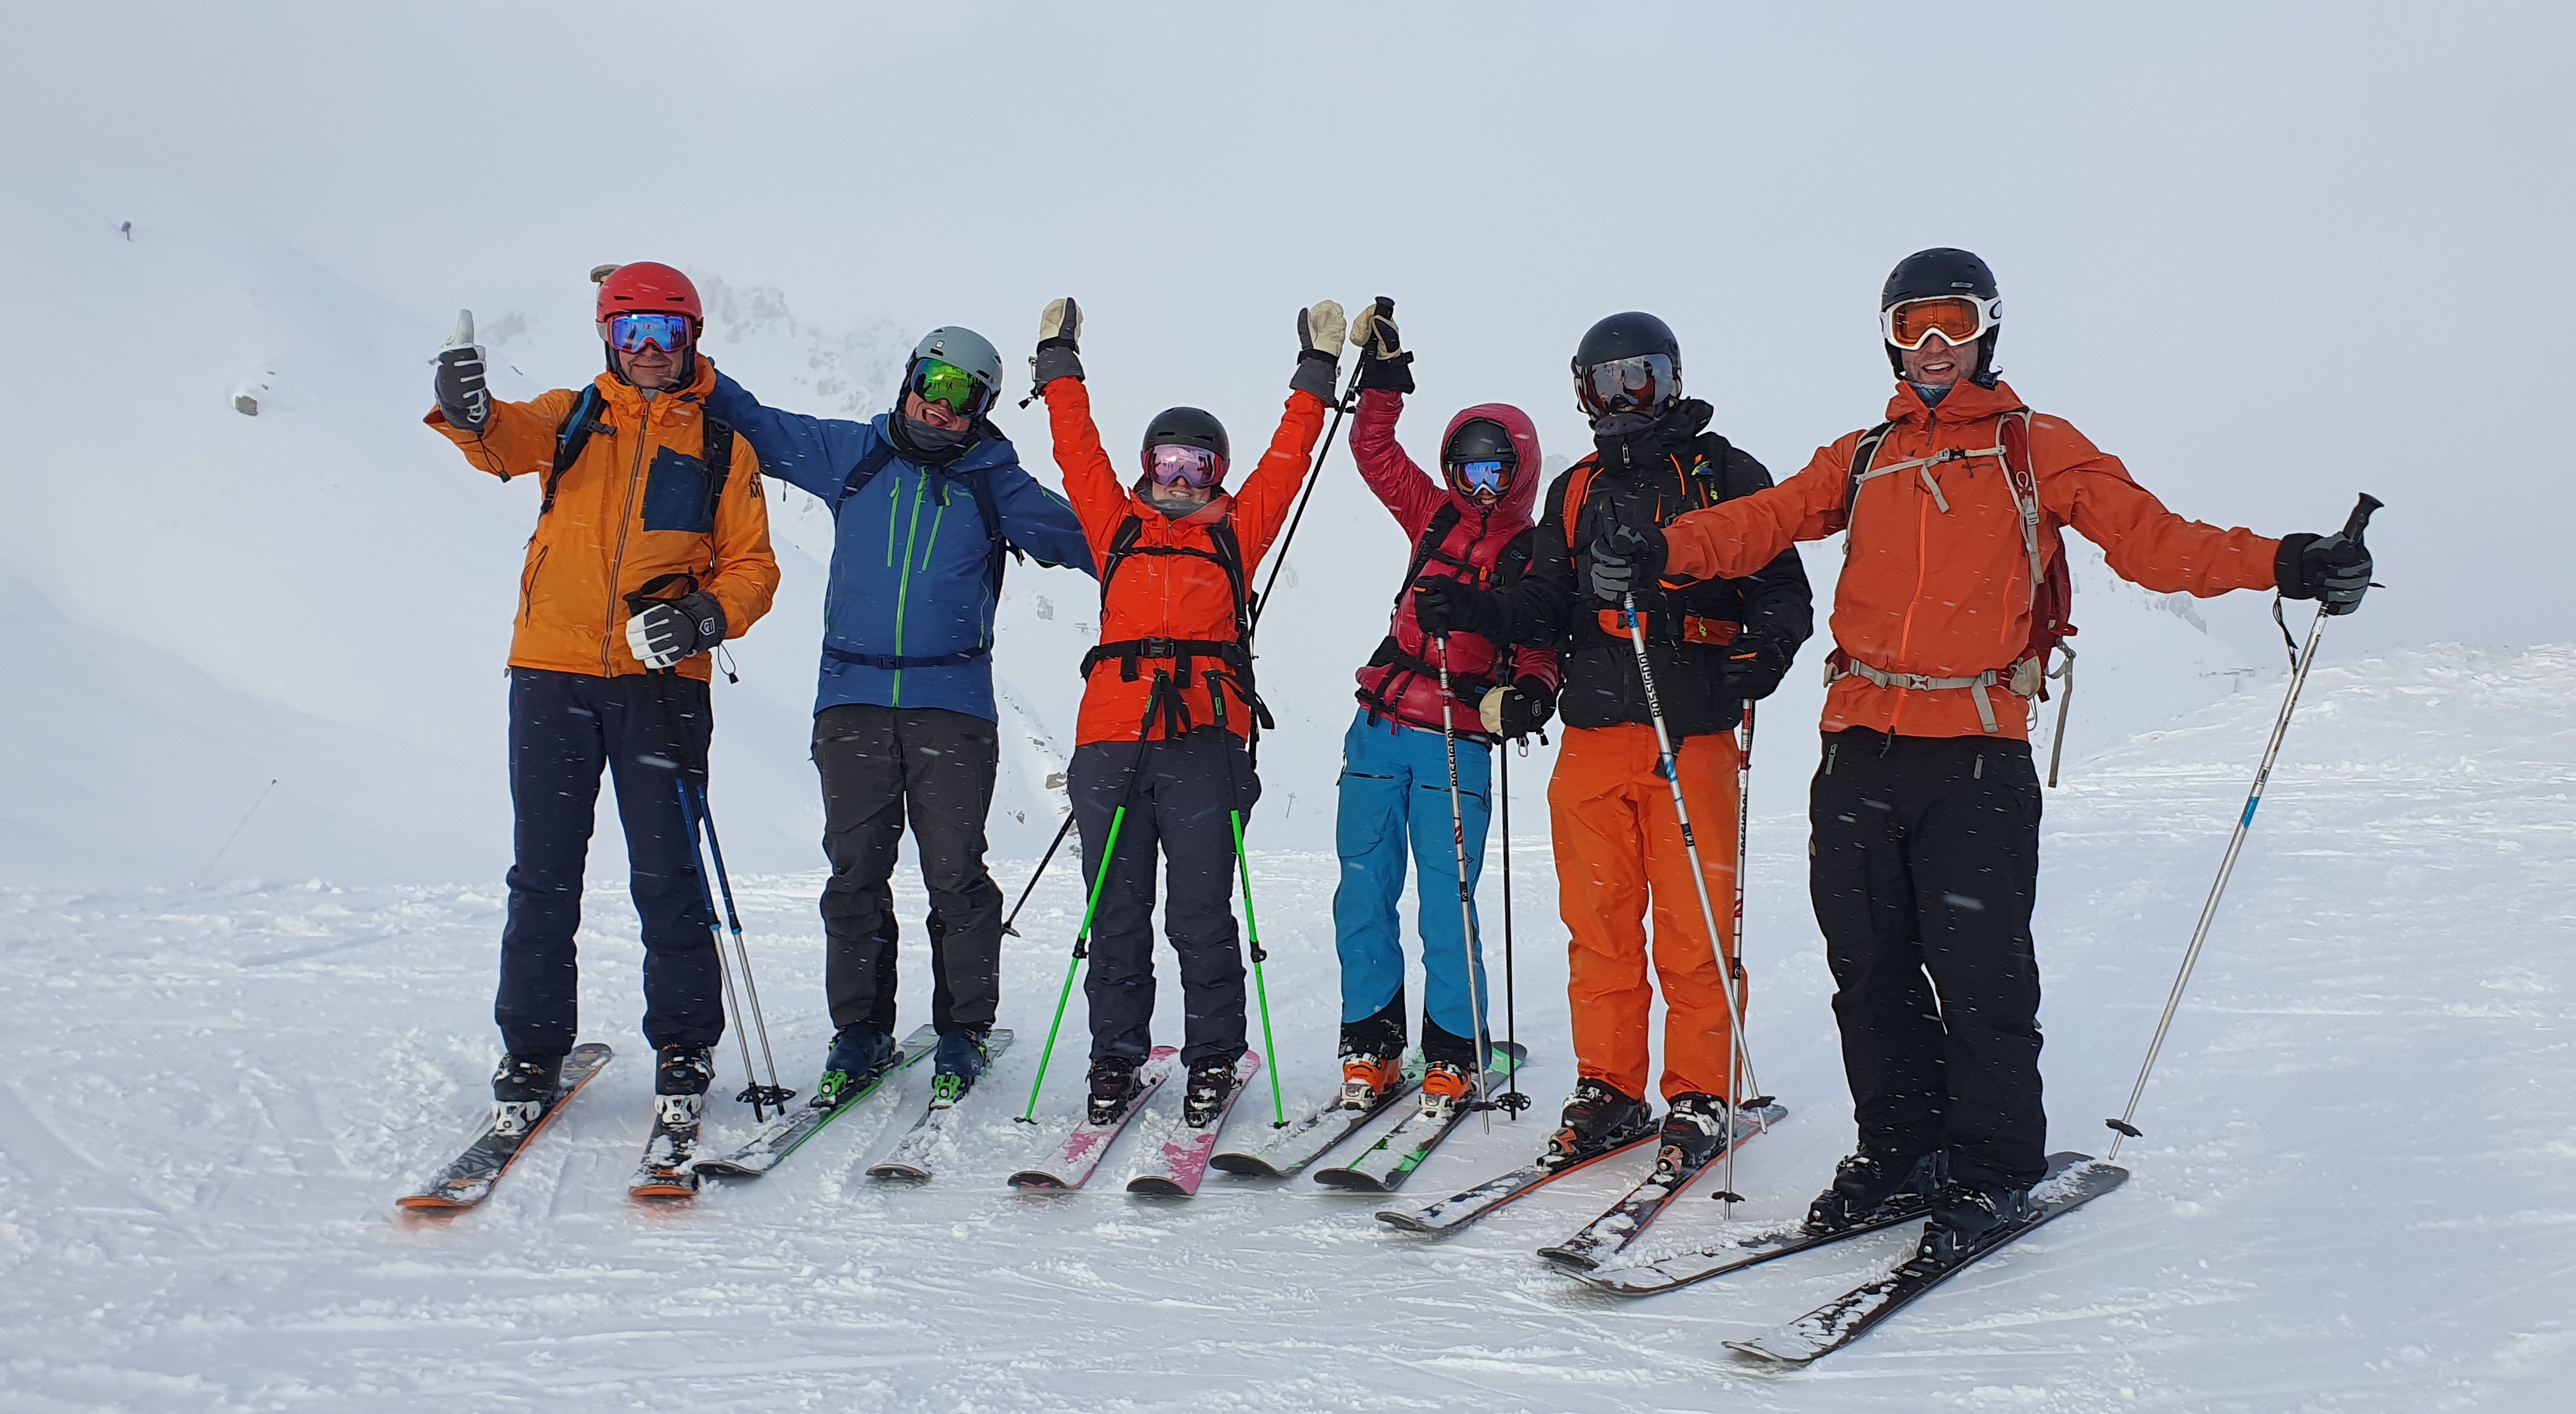 Early season ski courses